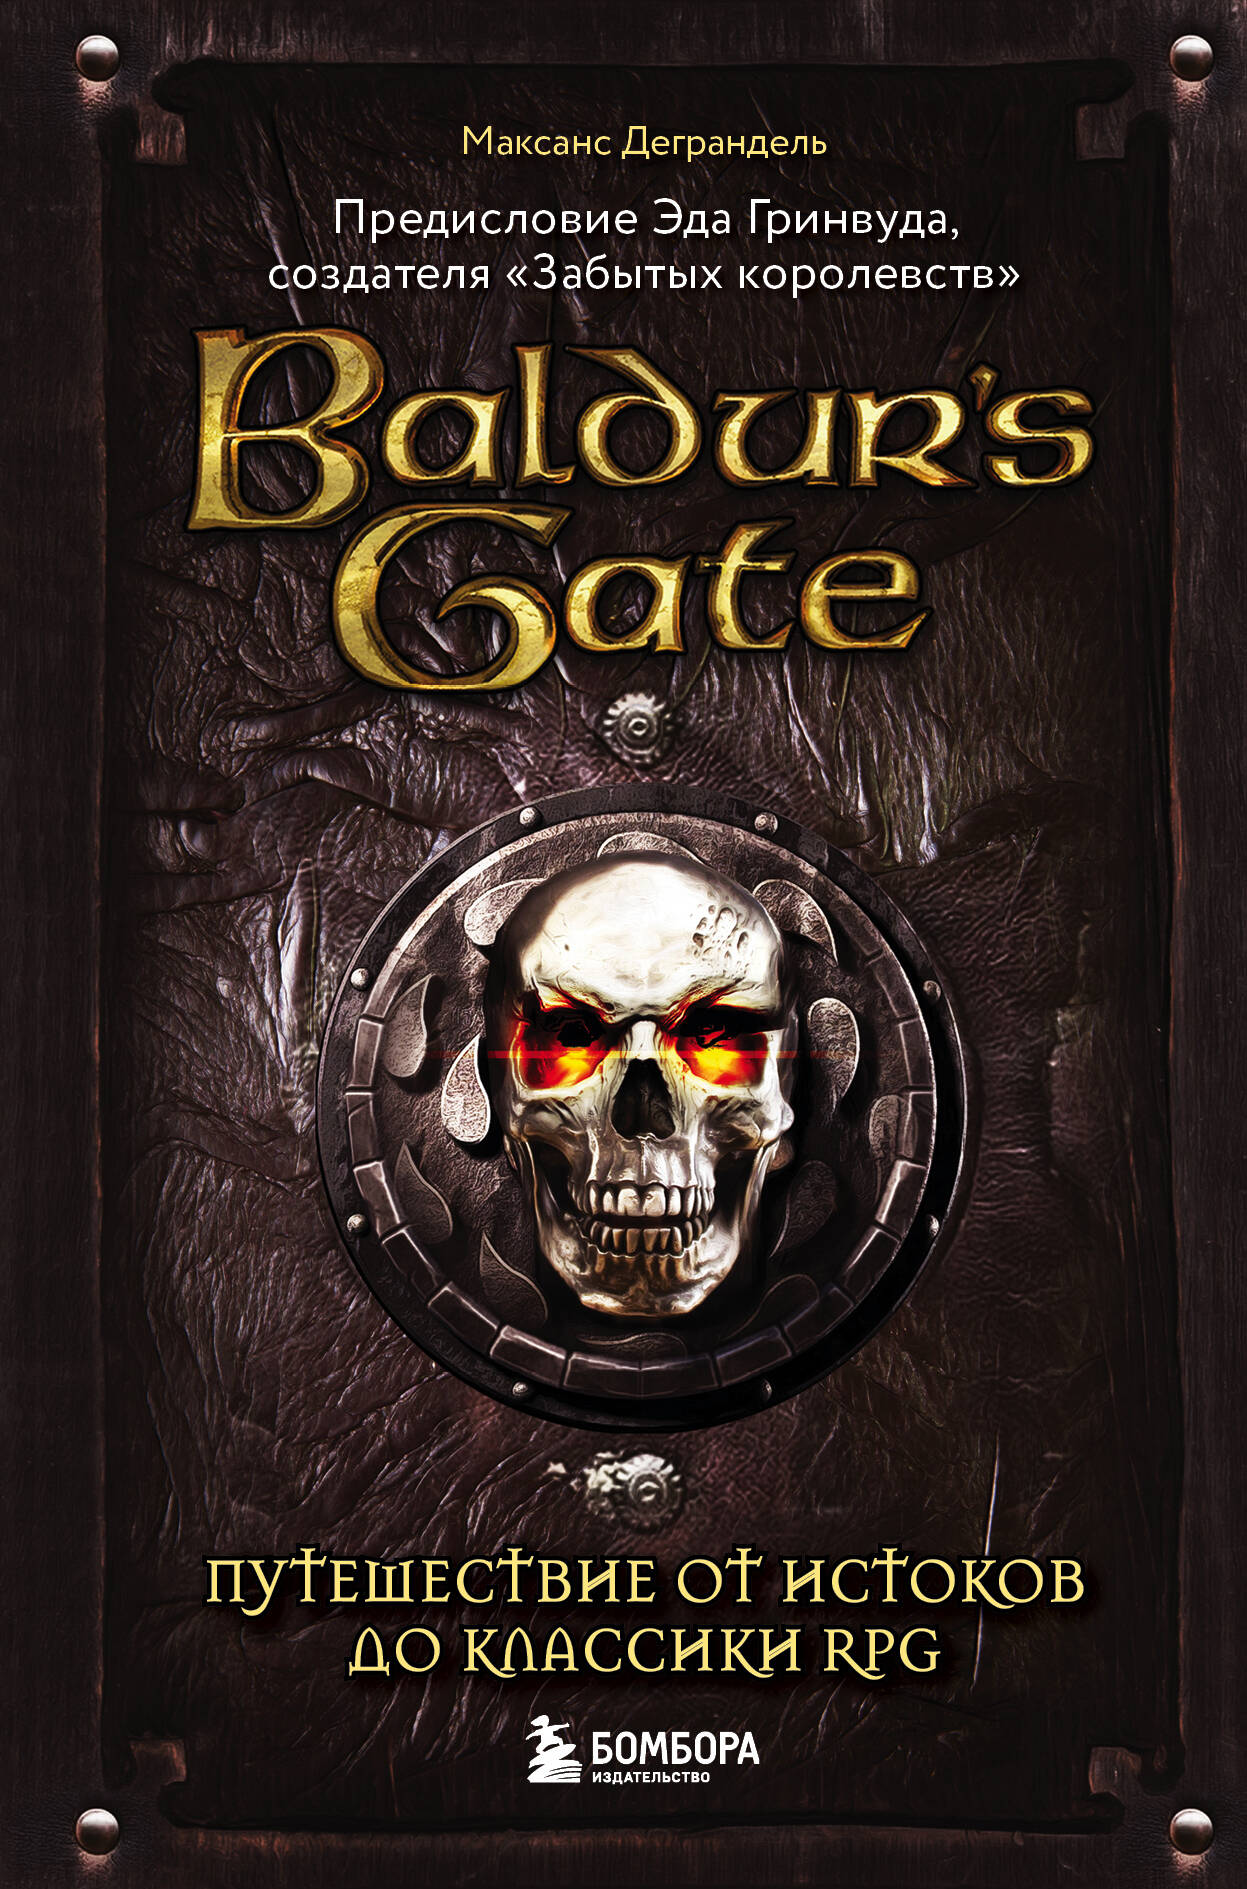 Деграндель Максанс Baldurs Gate. Путешествие от истоков до классики RPG baldur’s gate enhanced edition и baldur’s gate ii enhanced edition коллекционное издание xbox one